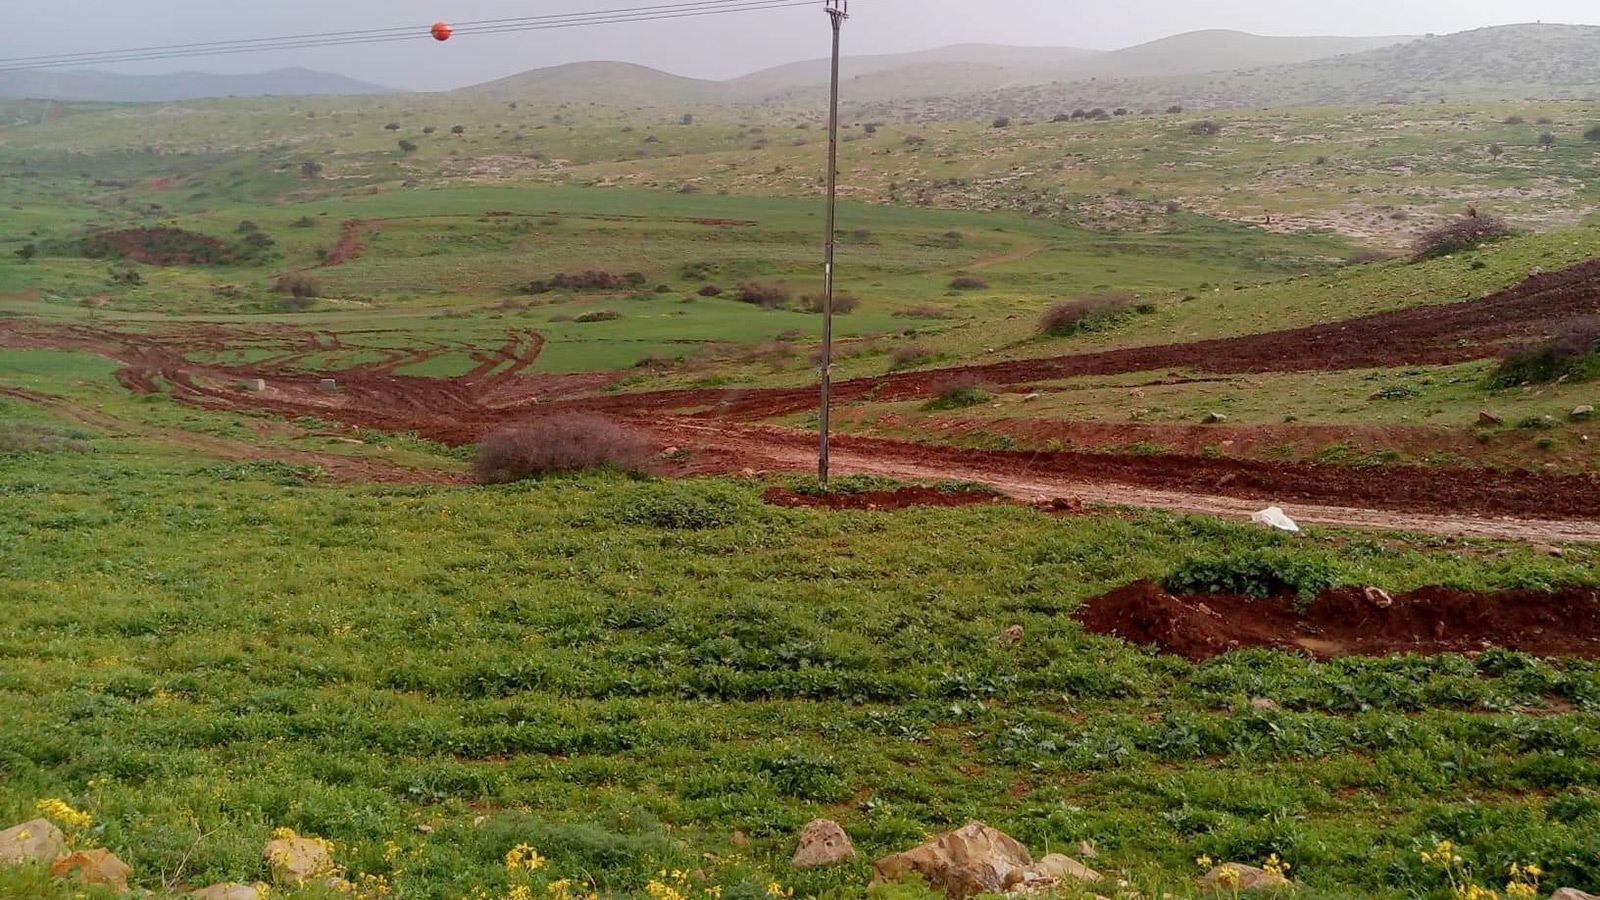 ‪آثار التدريبات العسكرية على أراضي الفلسطينيين الزراعية في منطقة البرج بالمالح في الأغوار الشمالية شمال الضفة الغربية المحتلة‬ (الجزيرة)